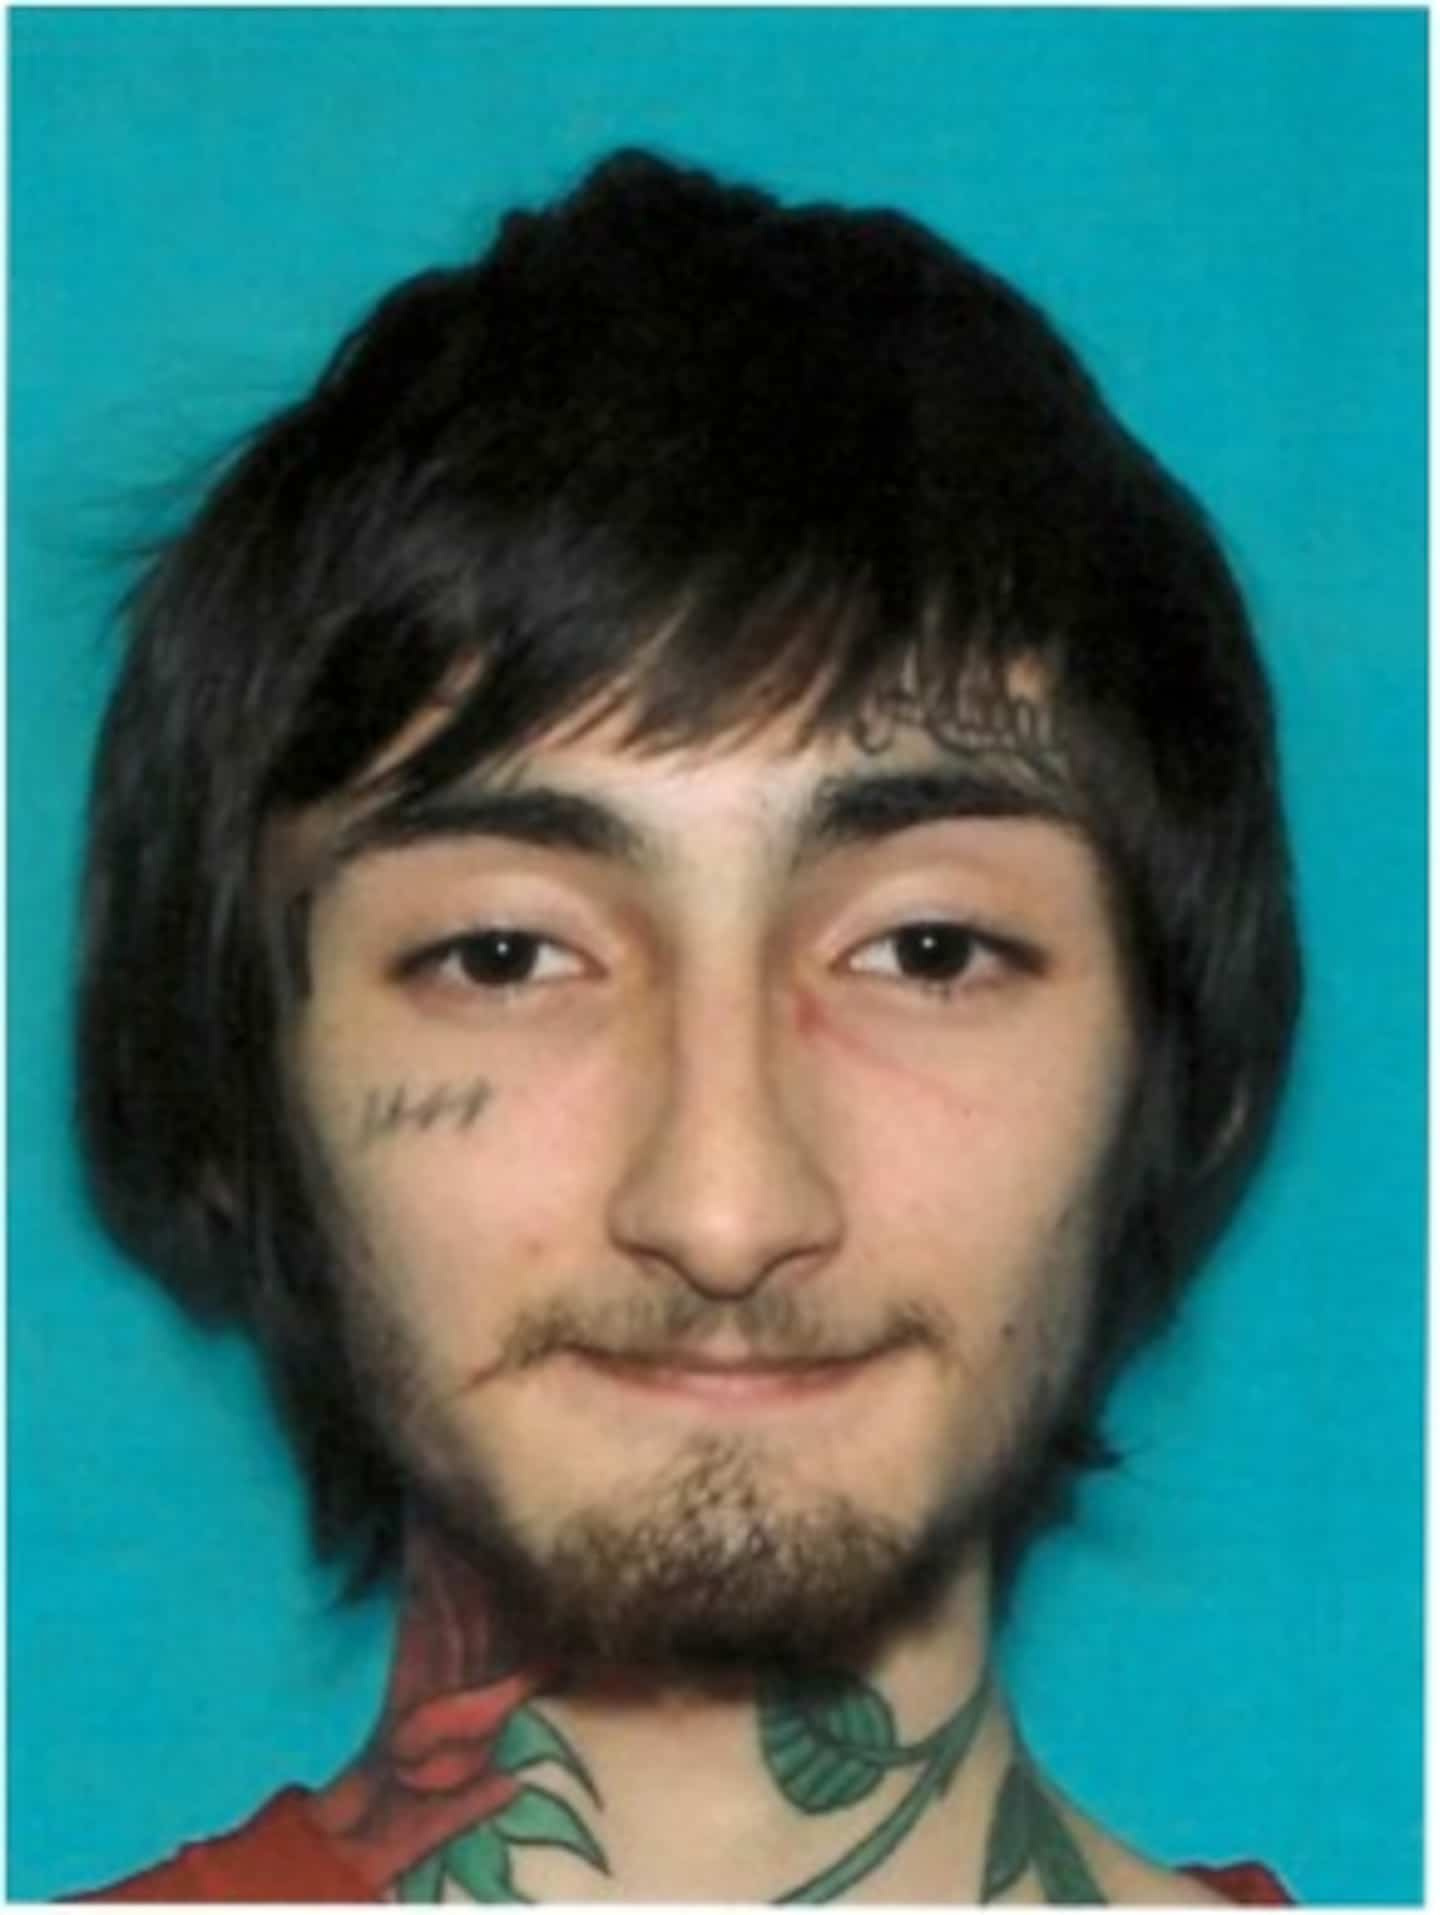 Highland Park shooting prime suspect arrested